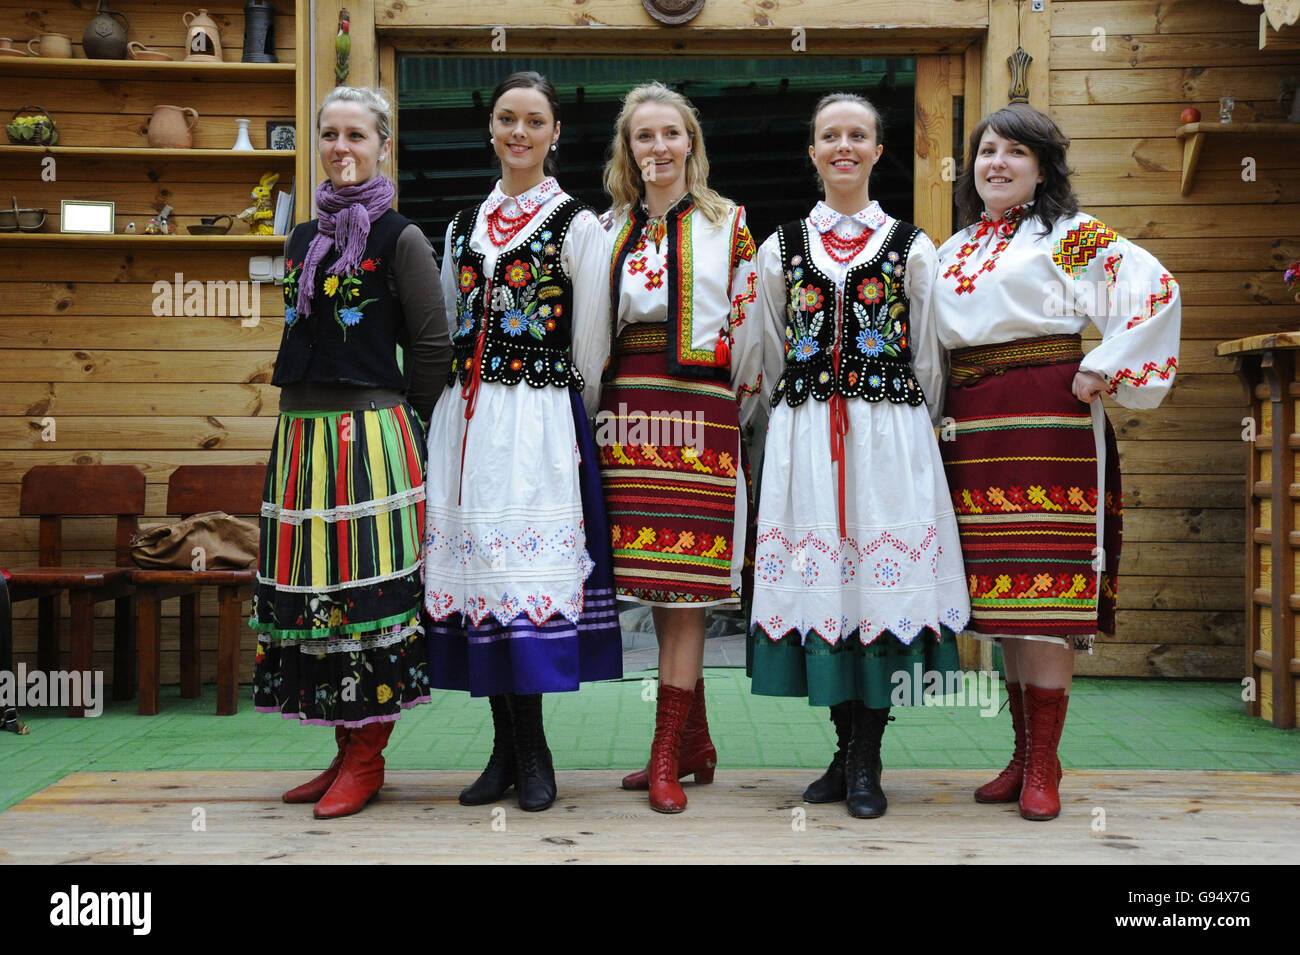 Les femmes en costumes traditionnels, restaurant, Marengo, Olsztyn Warmian-Masurian, Pologne / Mazurie Banque D'Images